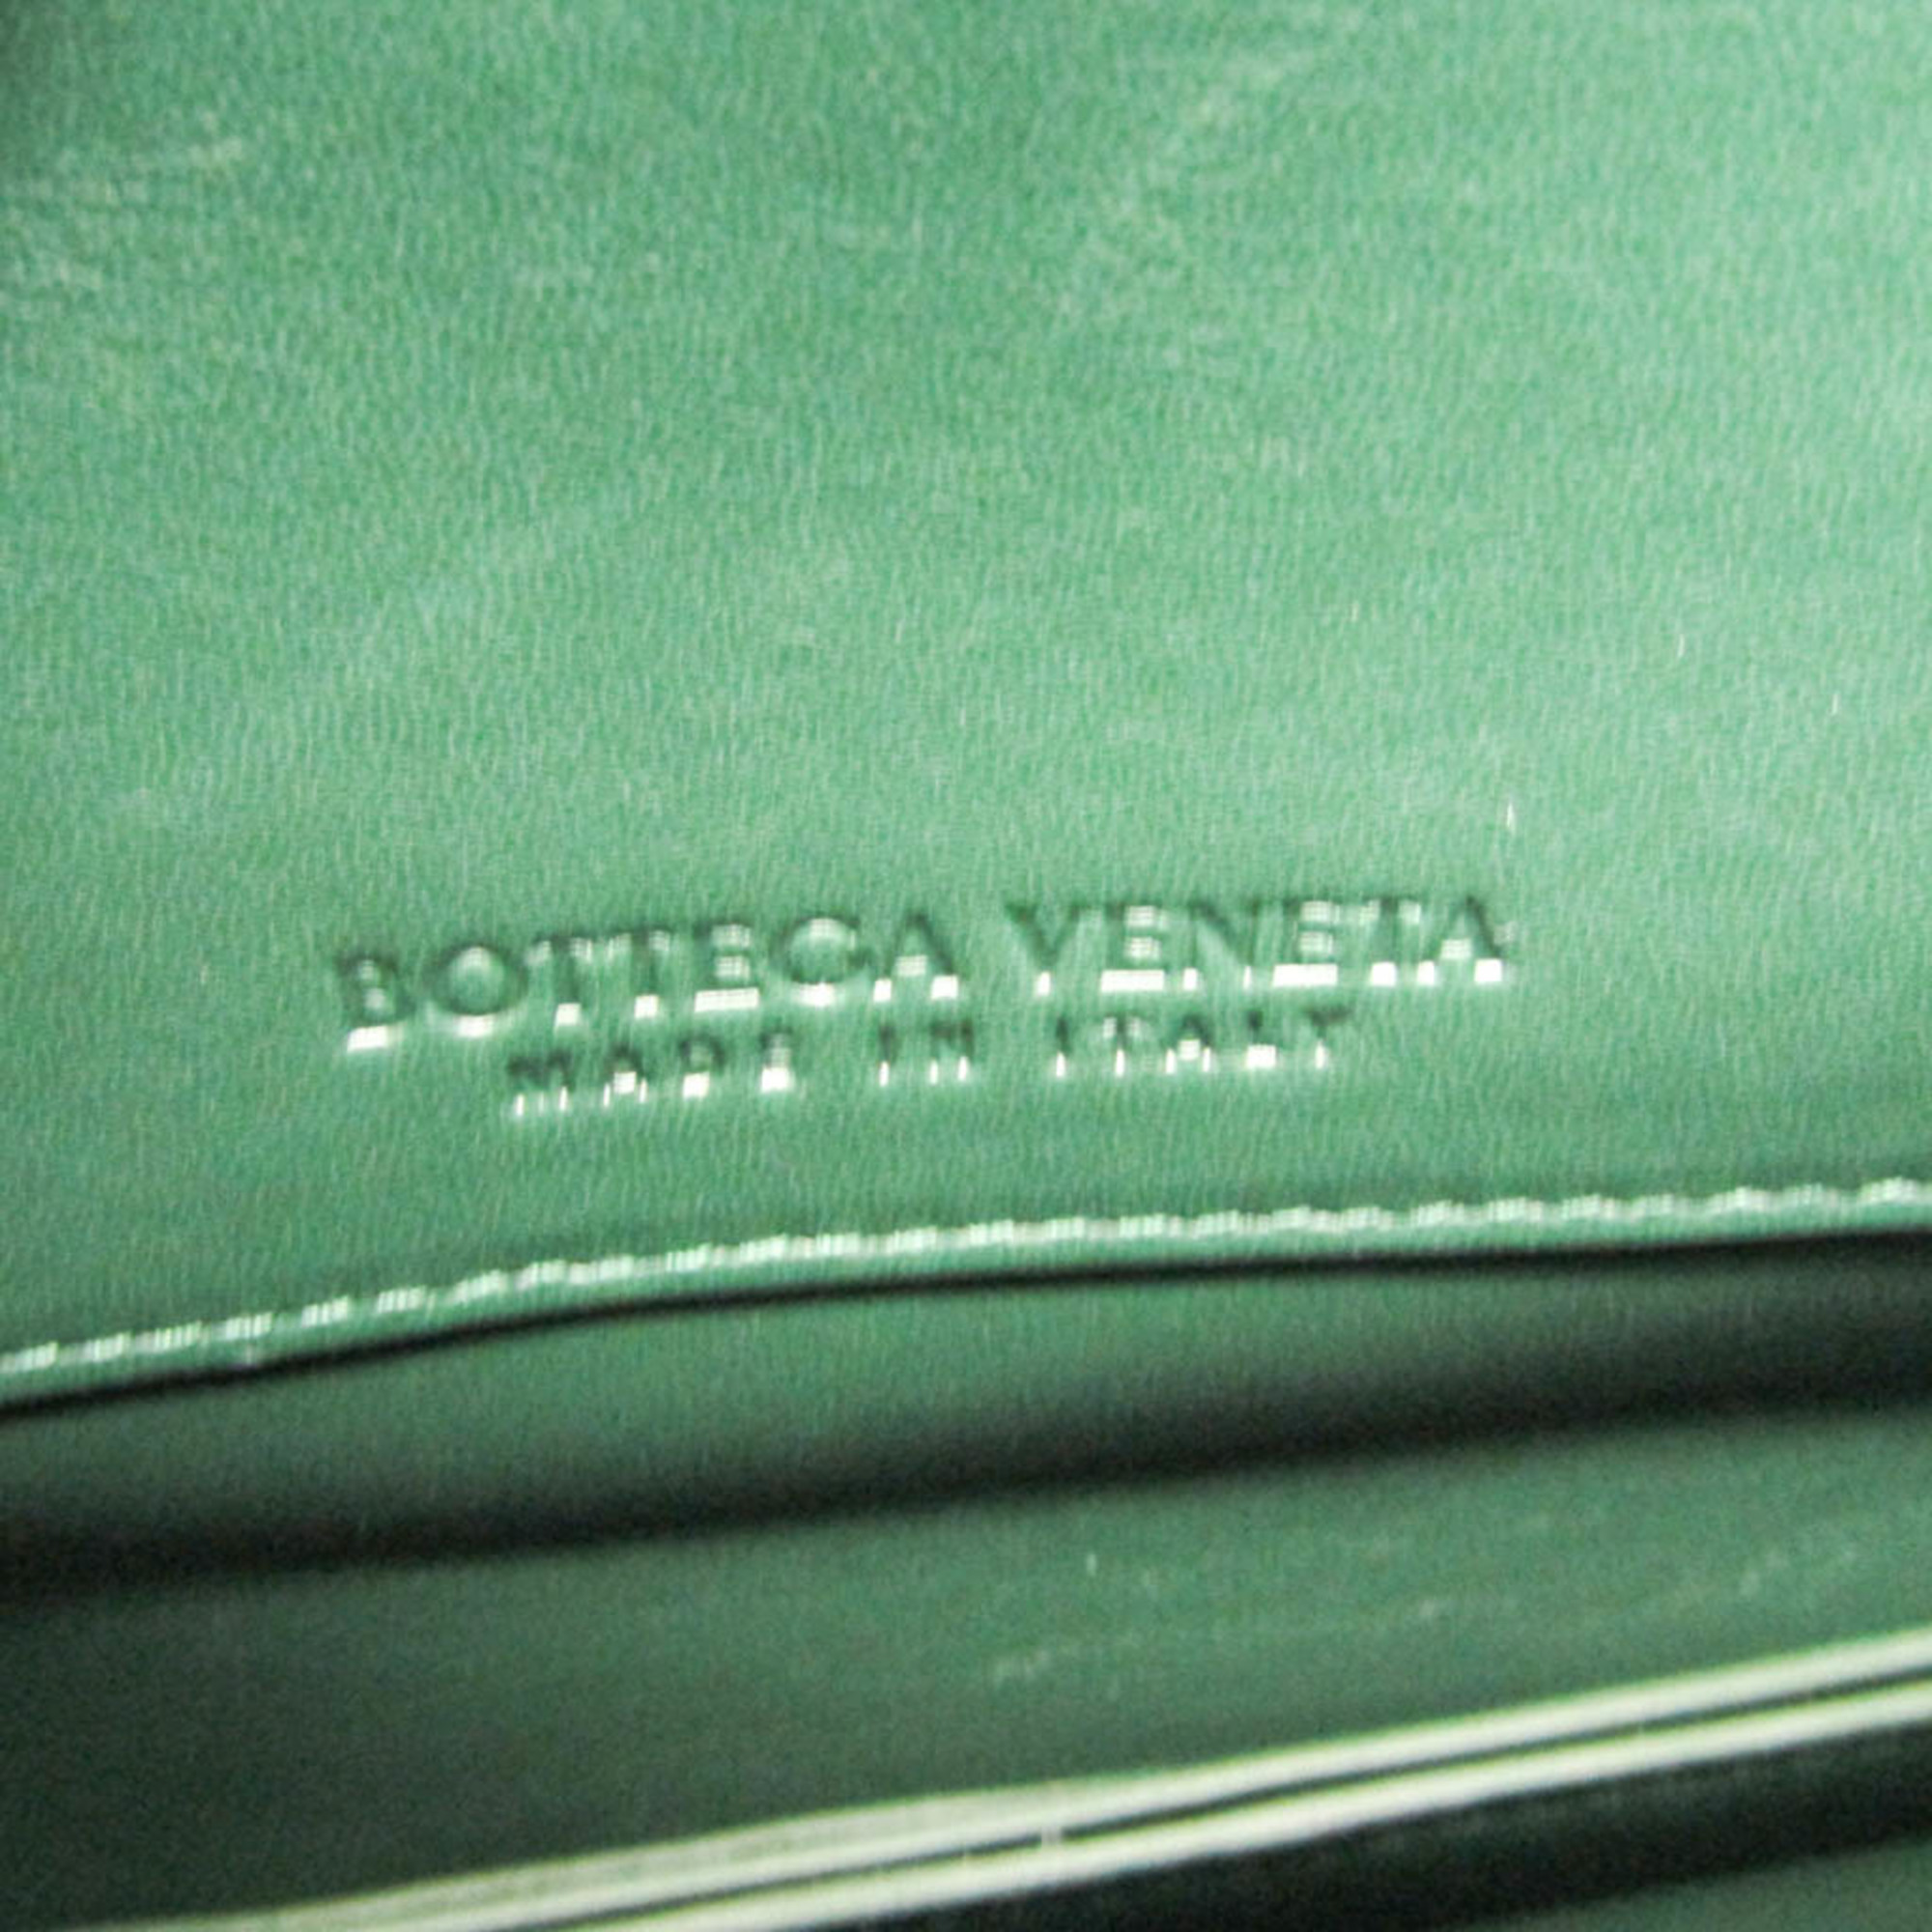 ボッテガ・ヴェネタ(Bottega Veneta) マウント レディース レザー ショルダーバッグ,トートバッグ グリーン